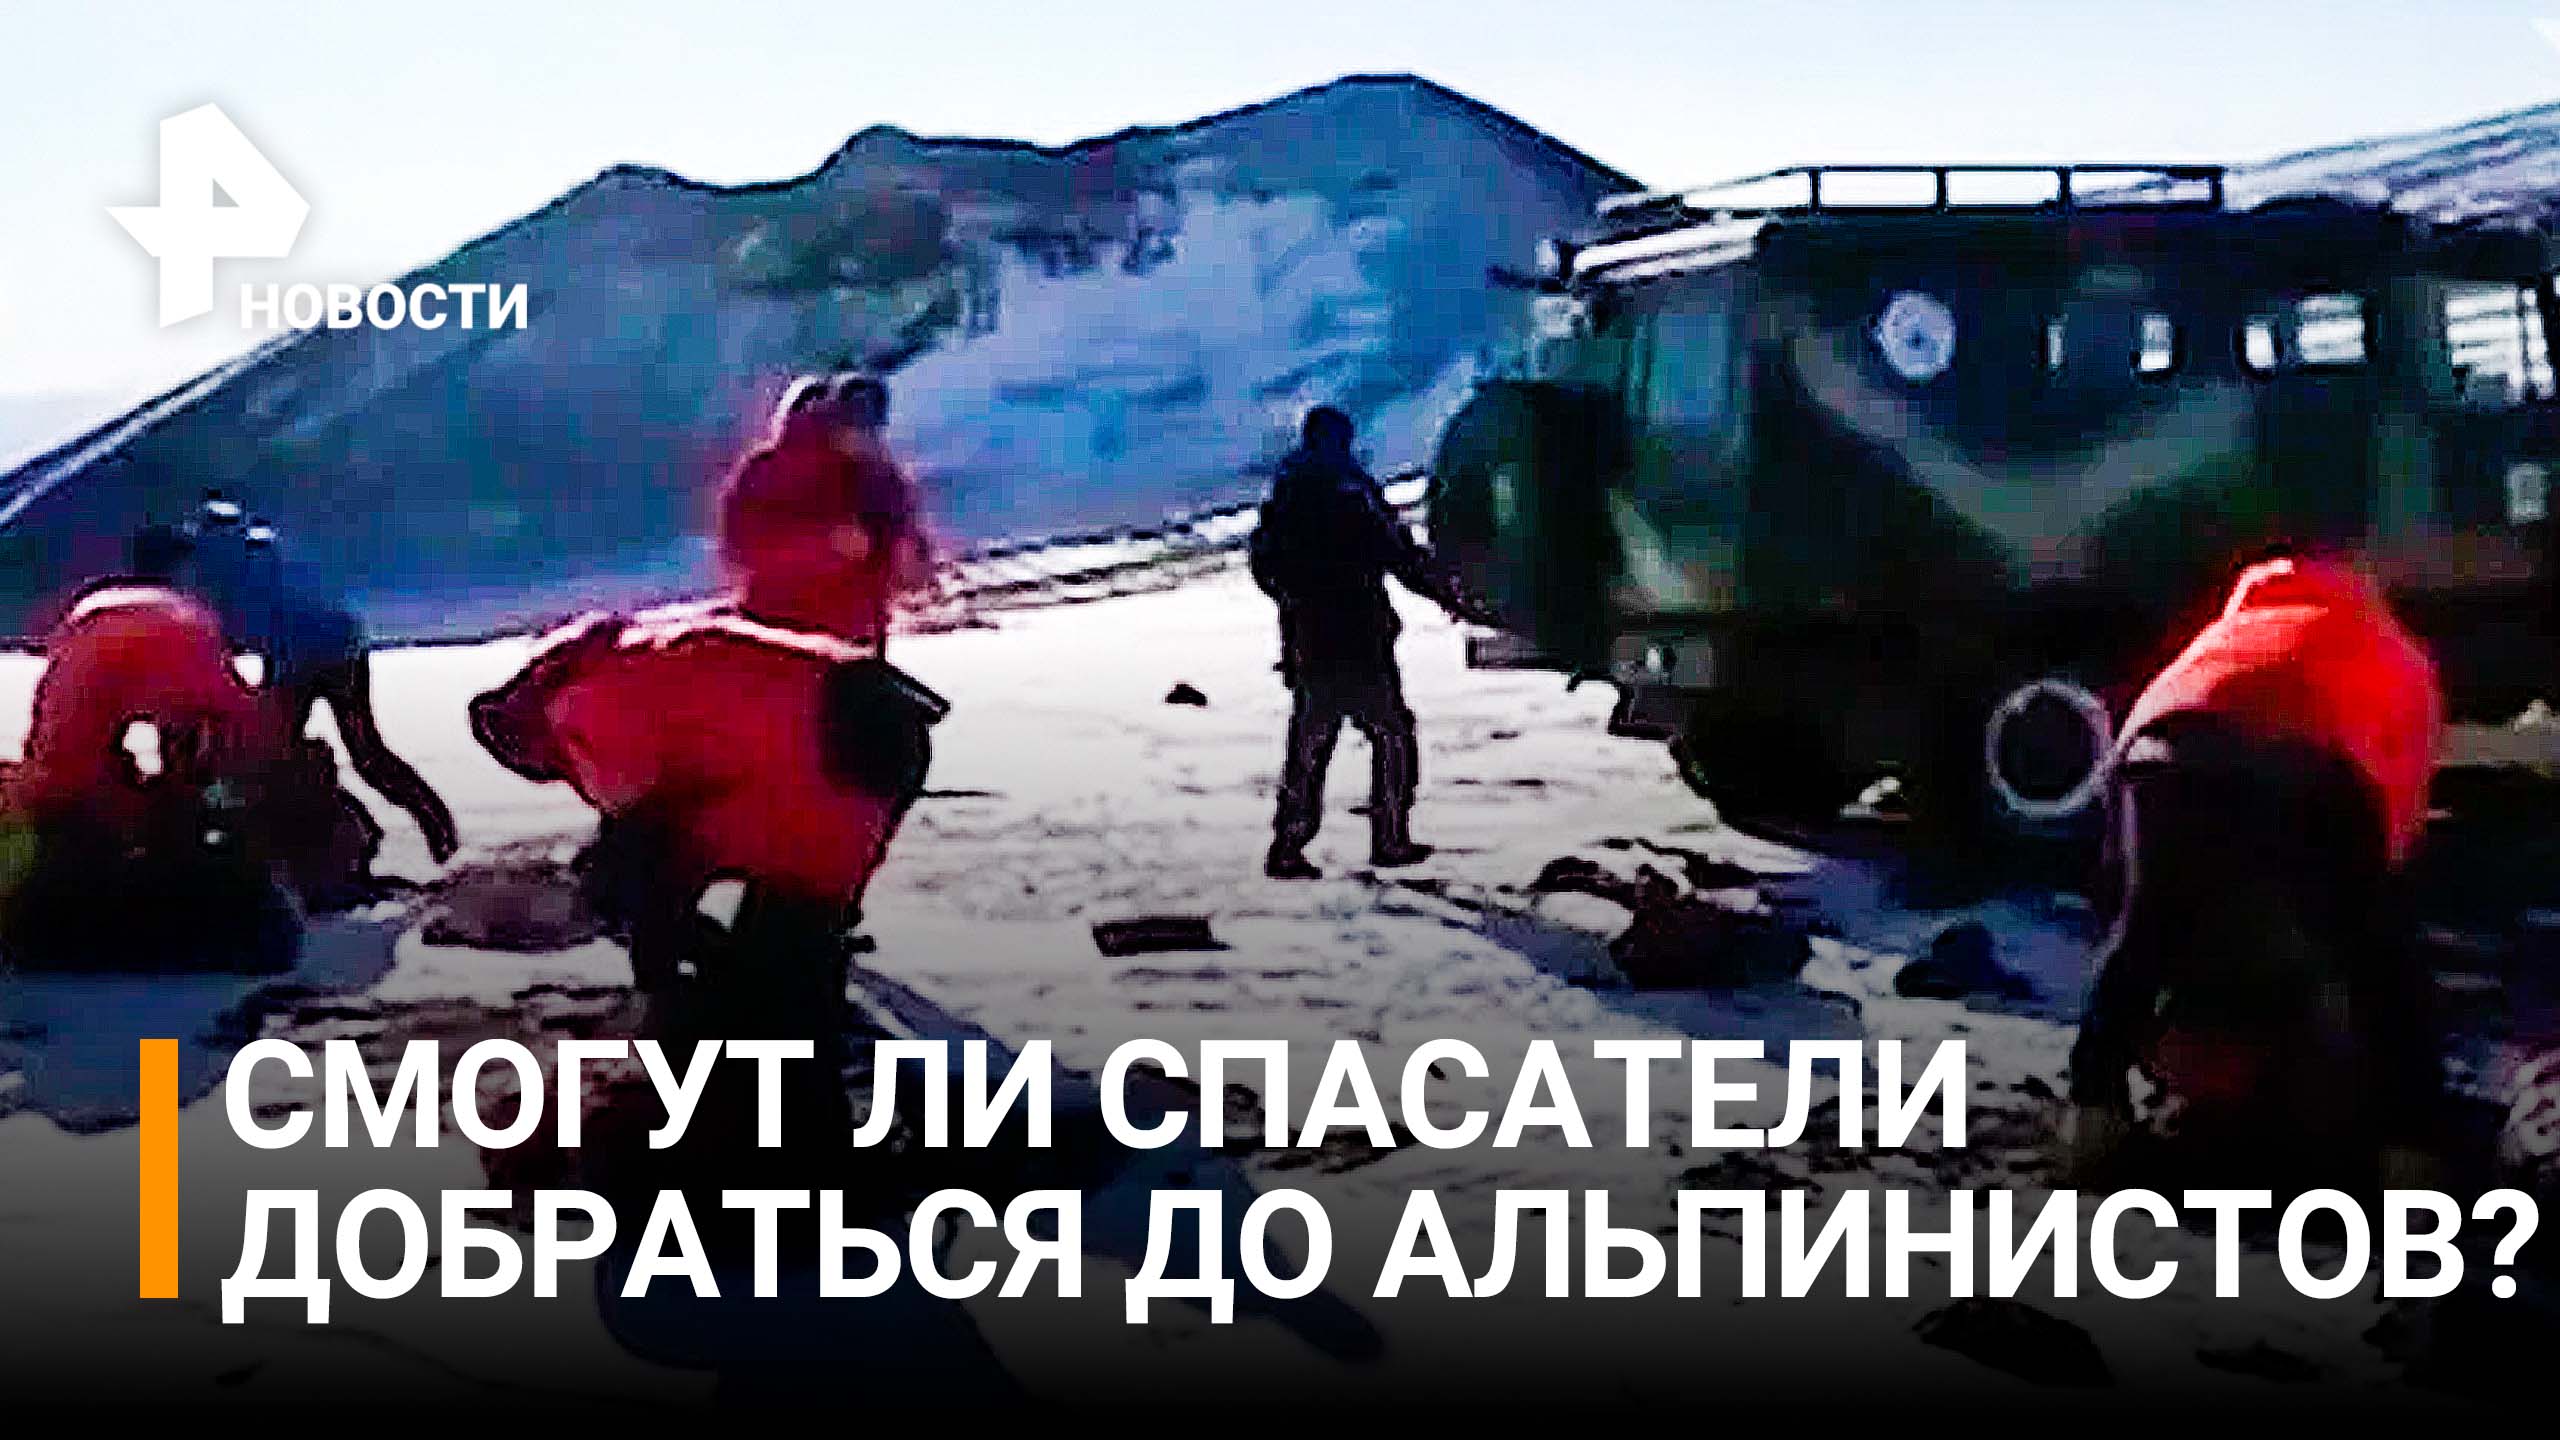 Помощь в пути: как пытаются спасти туристов на Ключевской Сопке / РЕН Новости